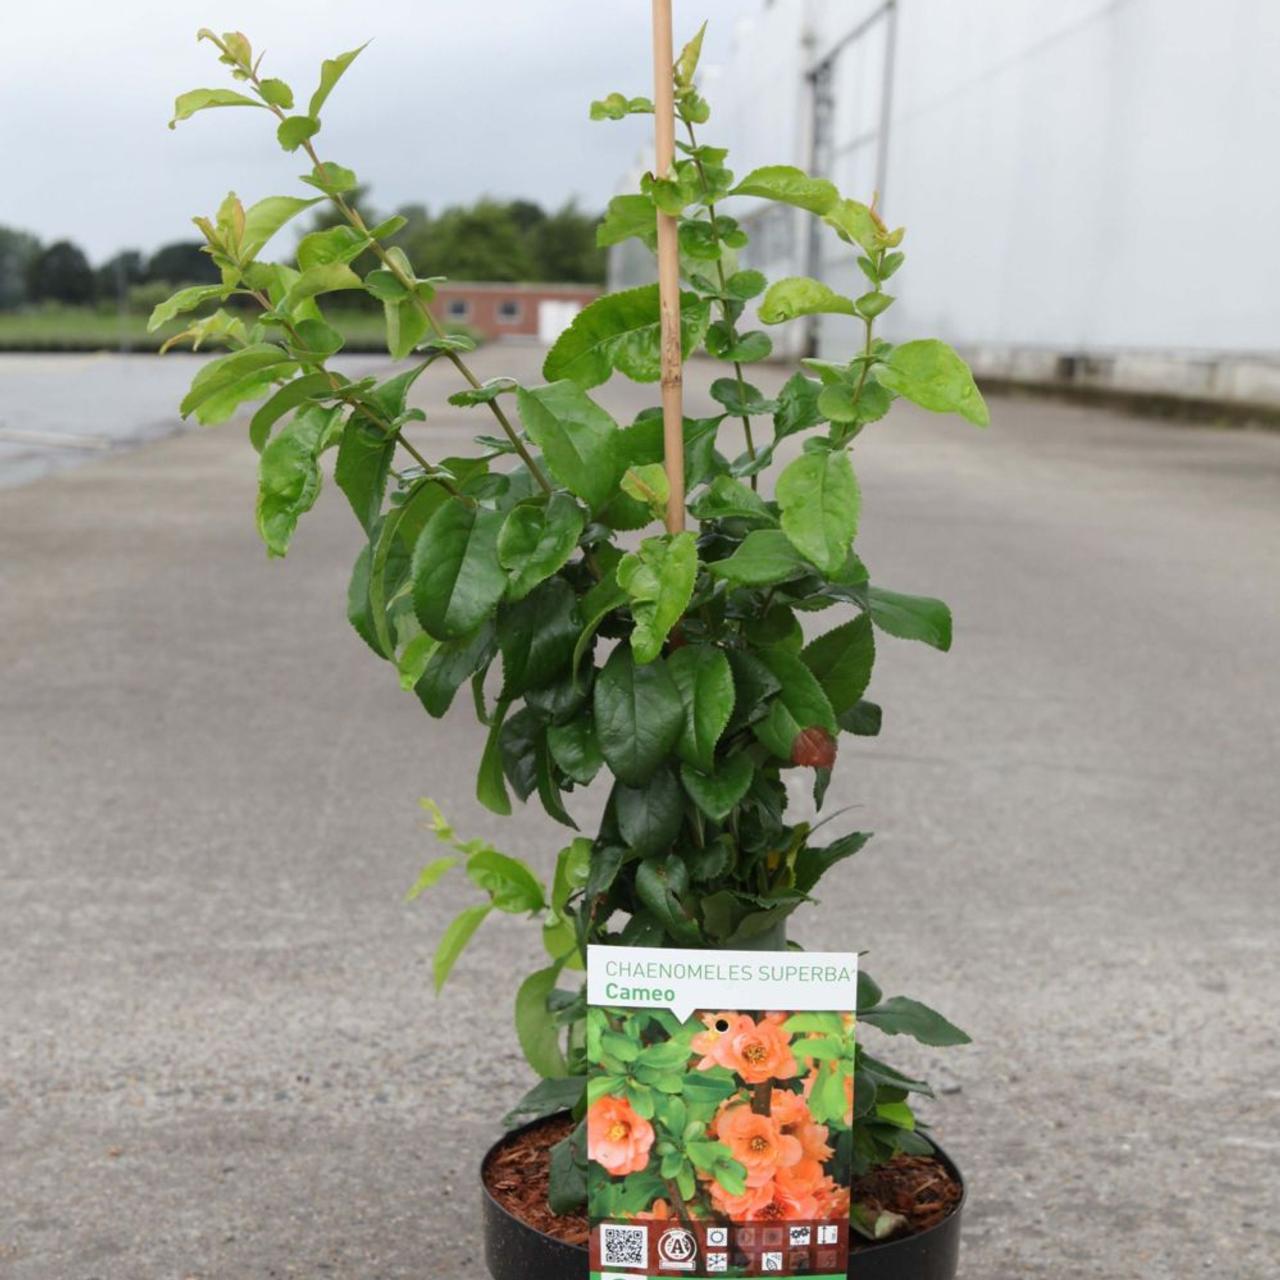 Chaenomeles superba 'Cameo'   Kaufen Sie Pflanzen bei Coolplants